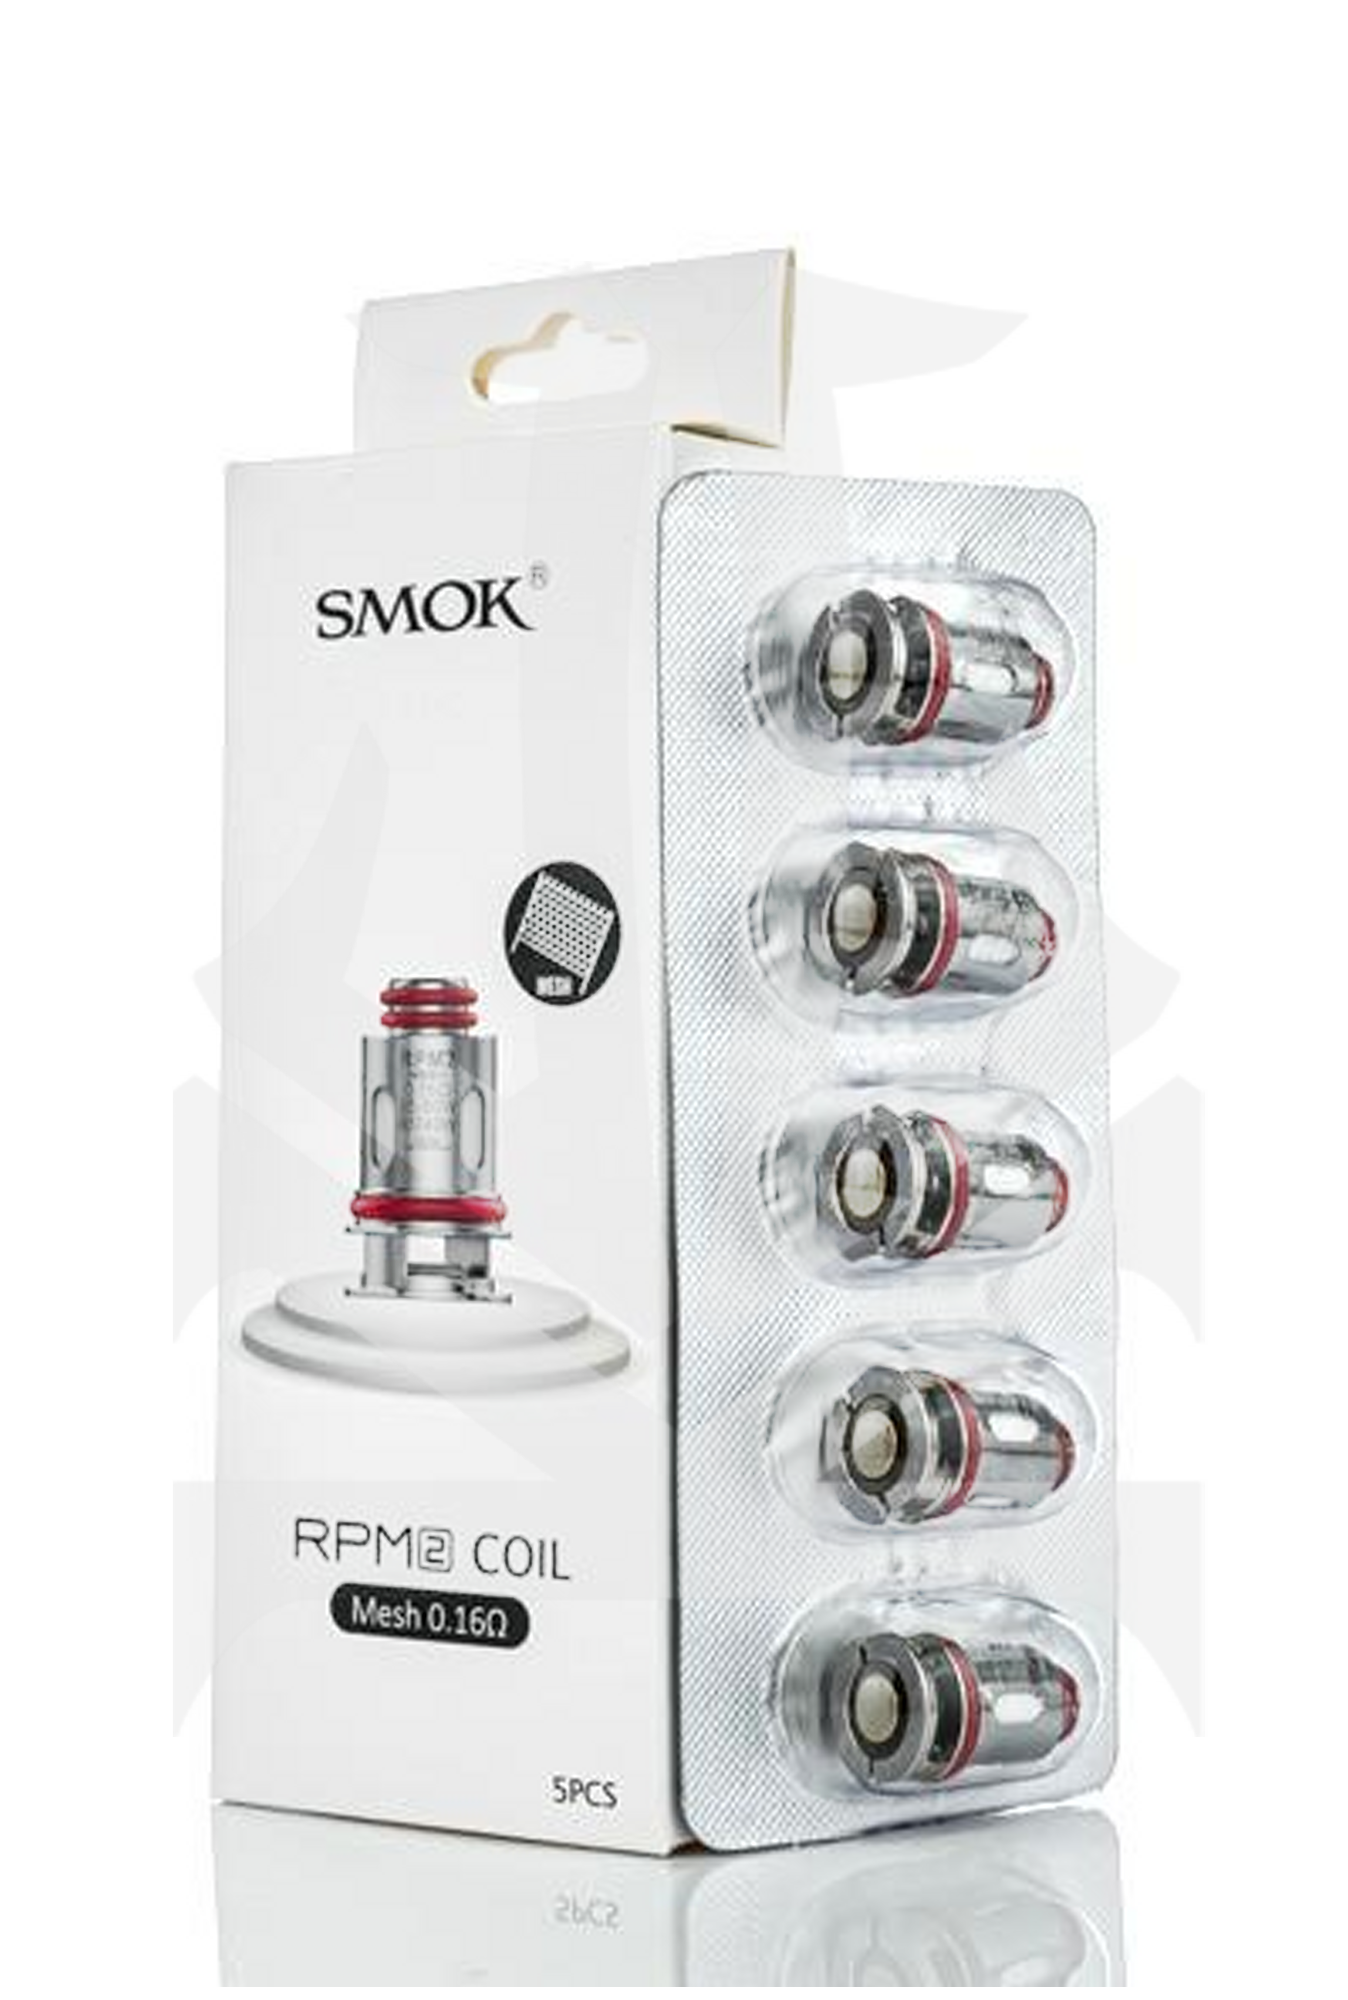 Smok RPM2 Coils